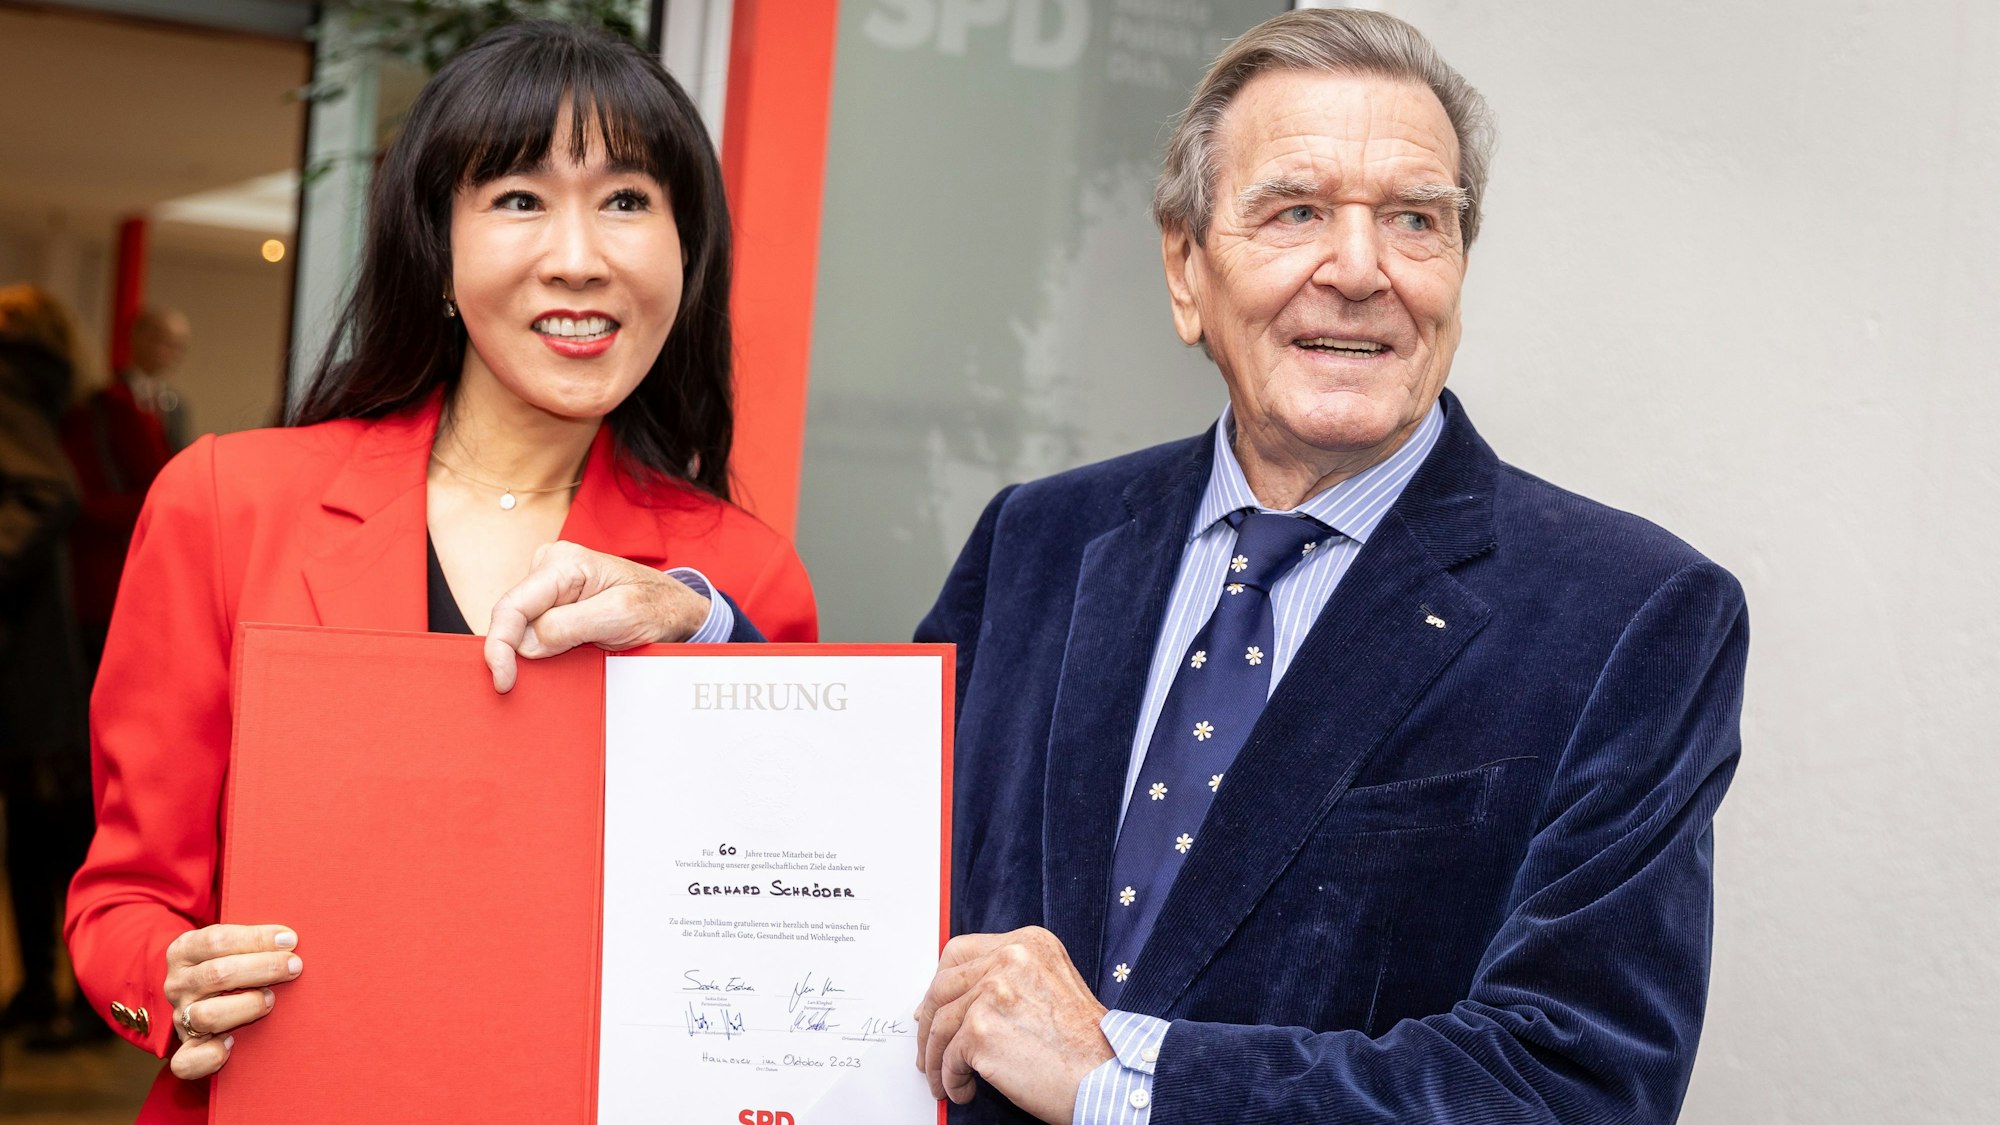 Gerhard Schröder hat in Hannover die Ehrung für 60 Jahre Mitgliedschaft in der SPD erhalten. An der Auszeichnung für den Altkanzler gibt es viel Kritik wegen seiner Nähe zu Russland.